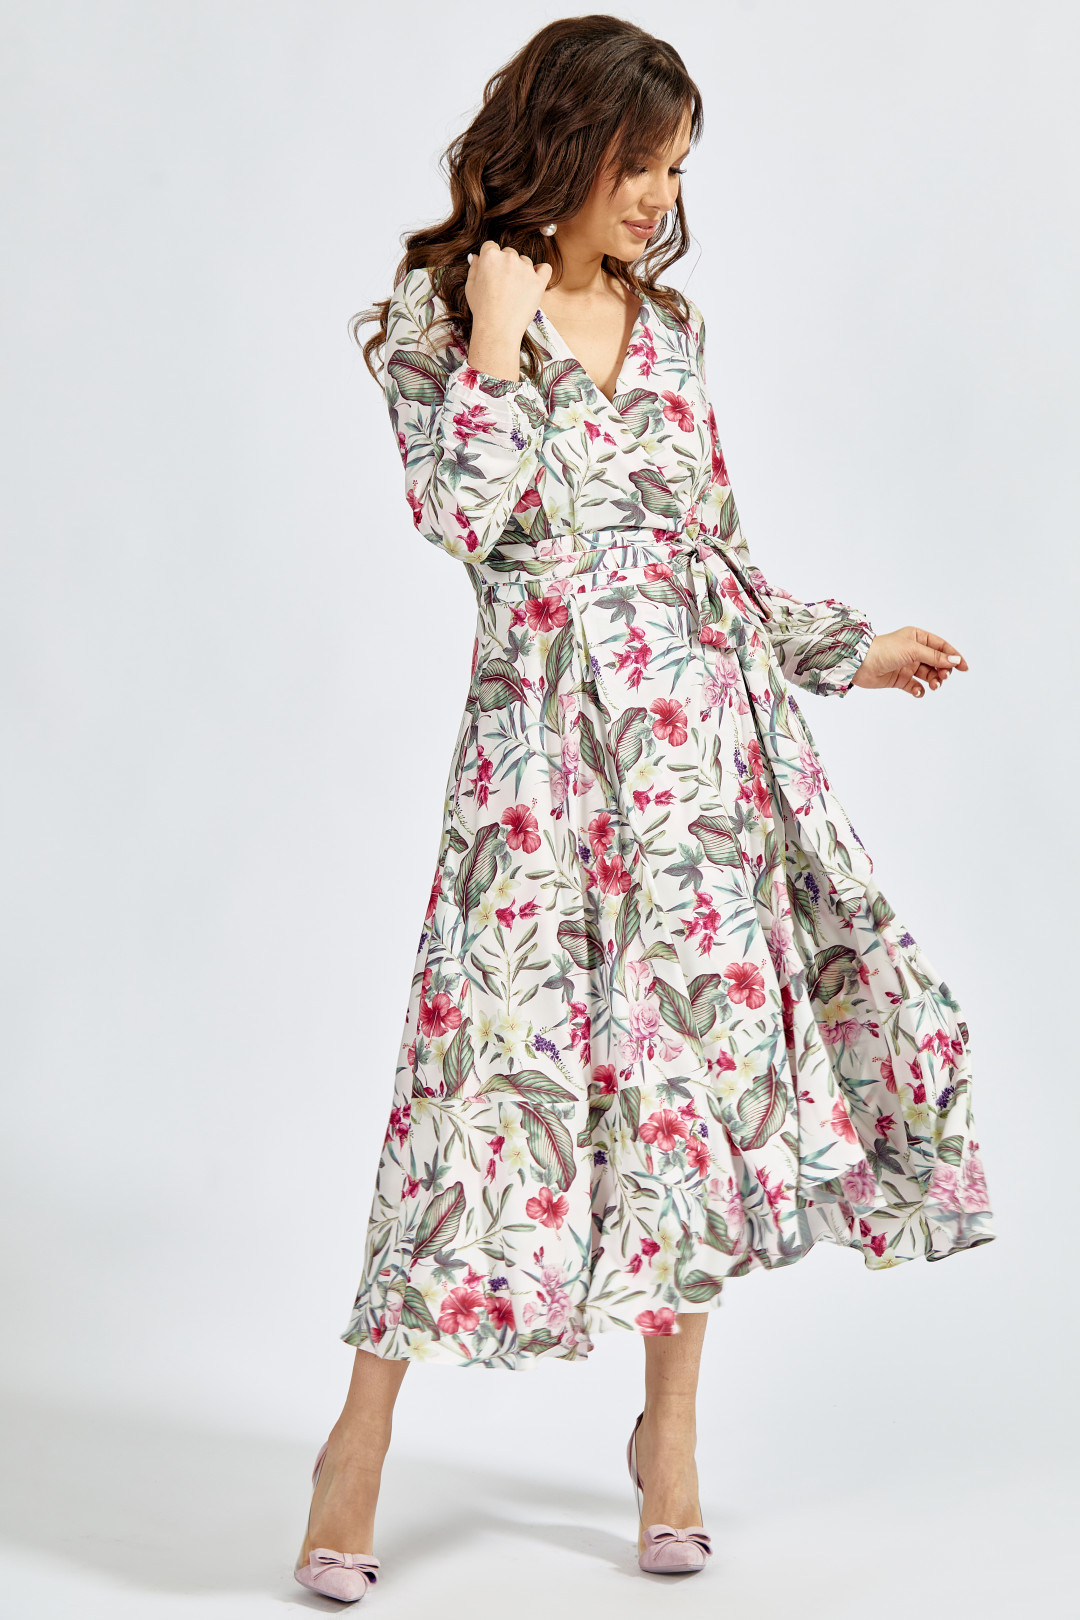 Платье ТЭФФИ-стиль 1417 цветы на молочном